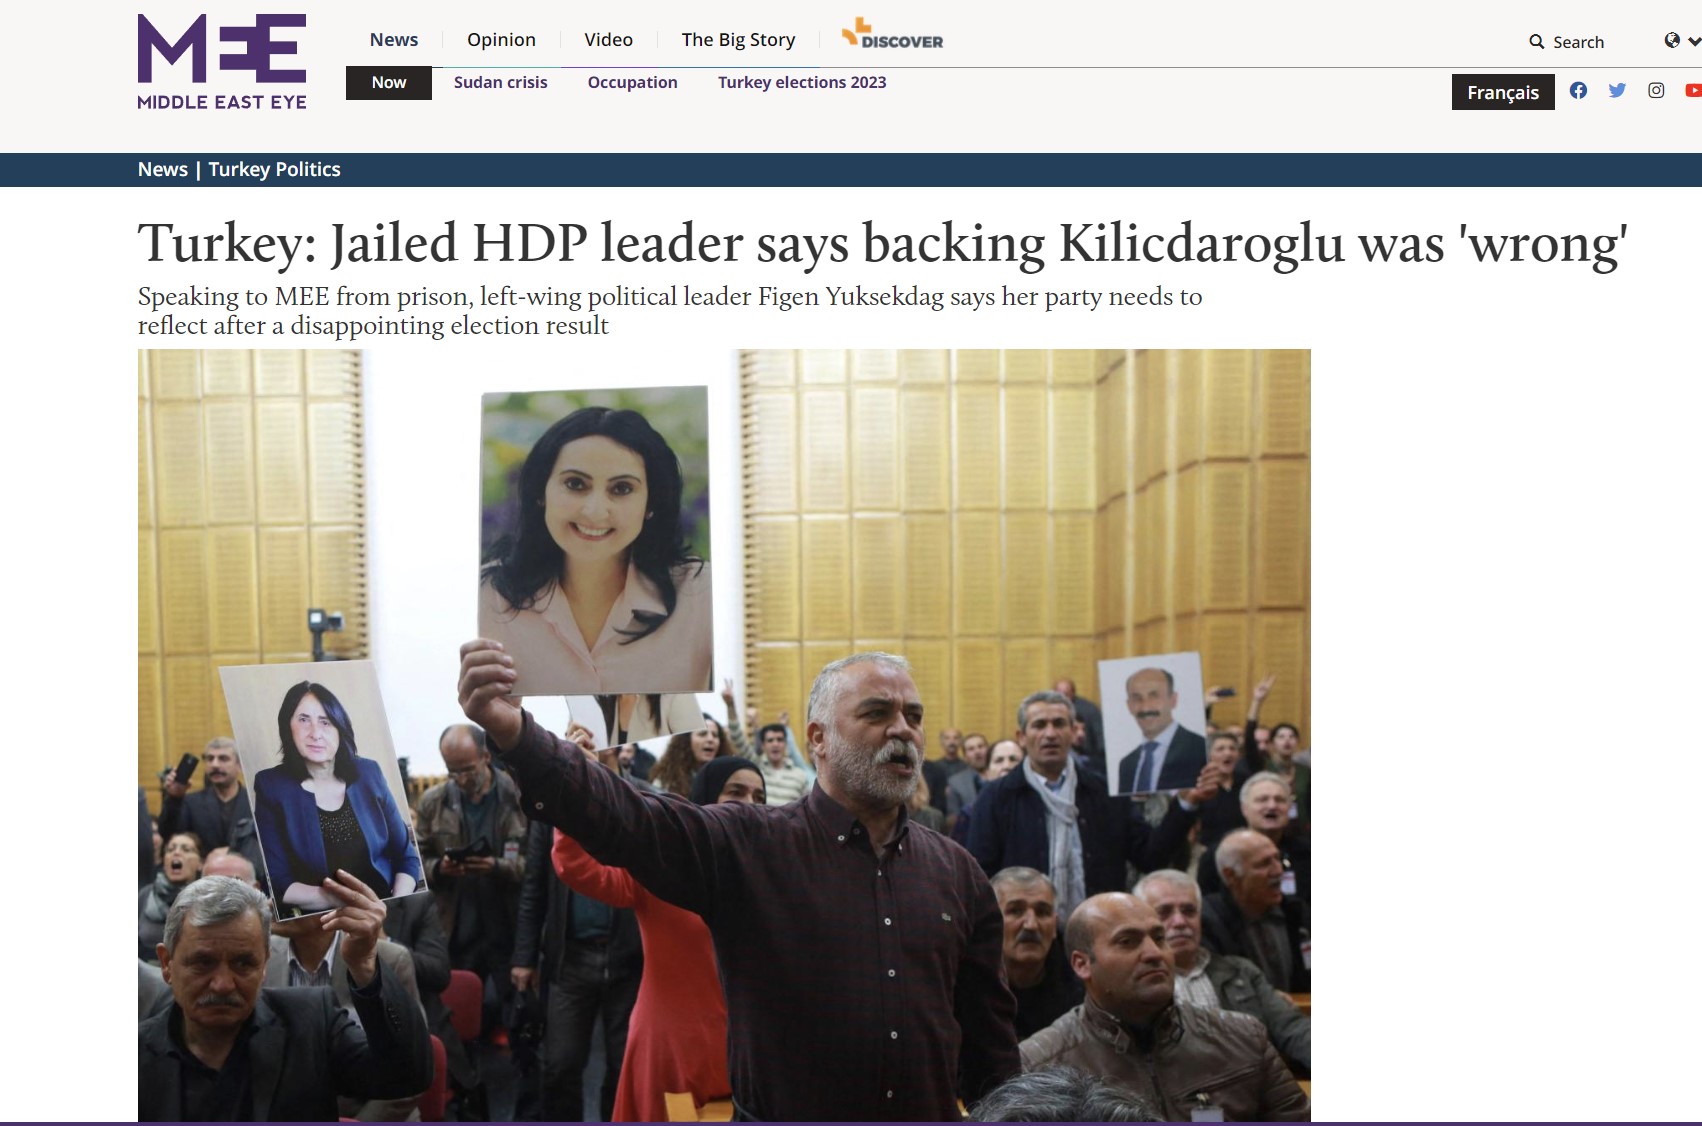 Middle East Eye: Η στήριξη στον Κιλιτσντάρογλου ήταν λάθος, λέει η φυλακισμένη υπαρχηγός του HDP, Φιγκέν Γιουκσεκντάγ